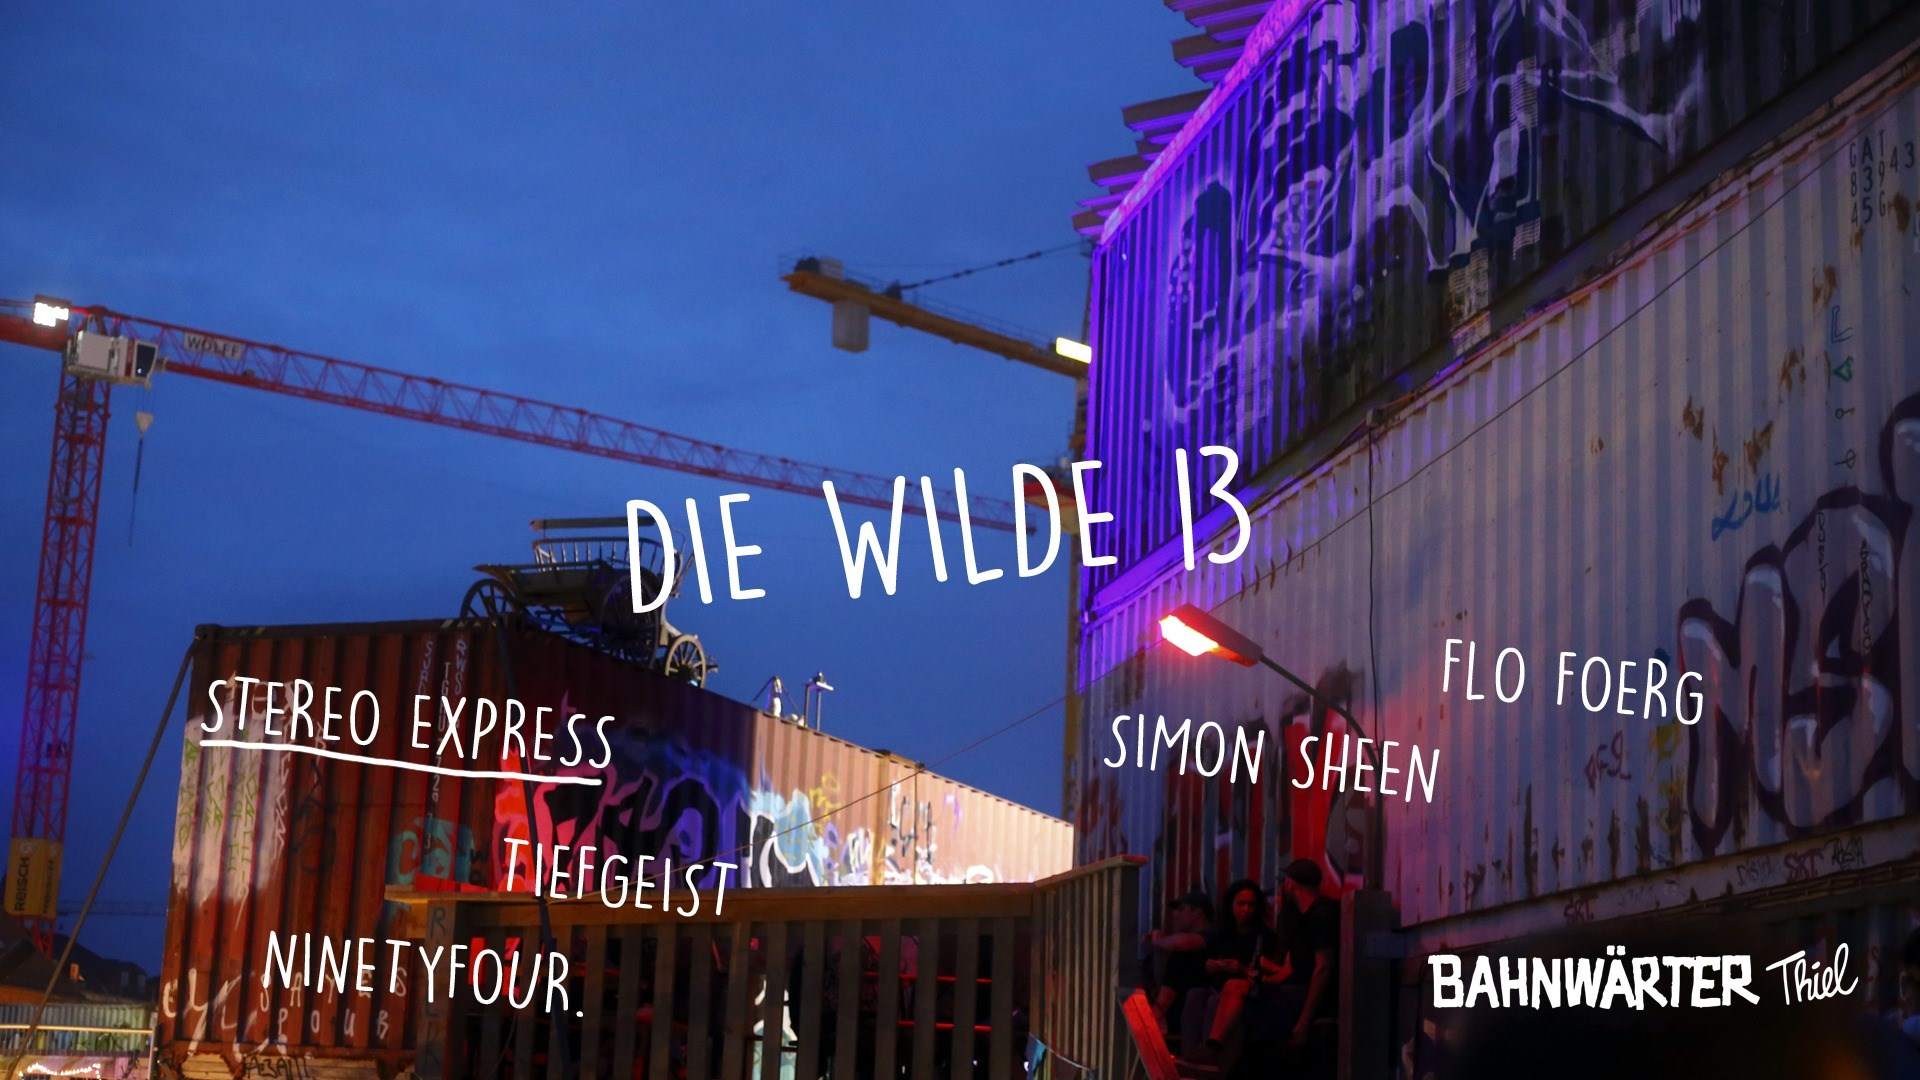 Die Wilde 13 mit Stereo Express - Página frontal